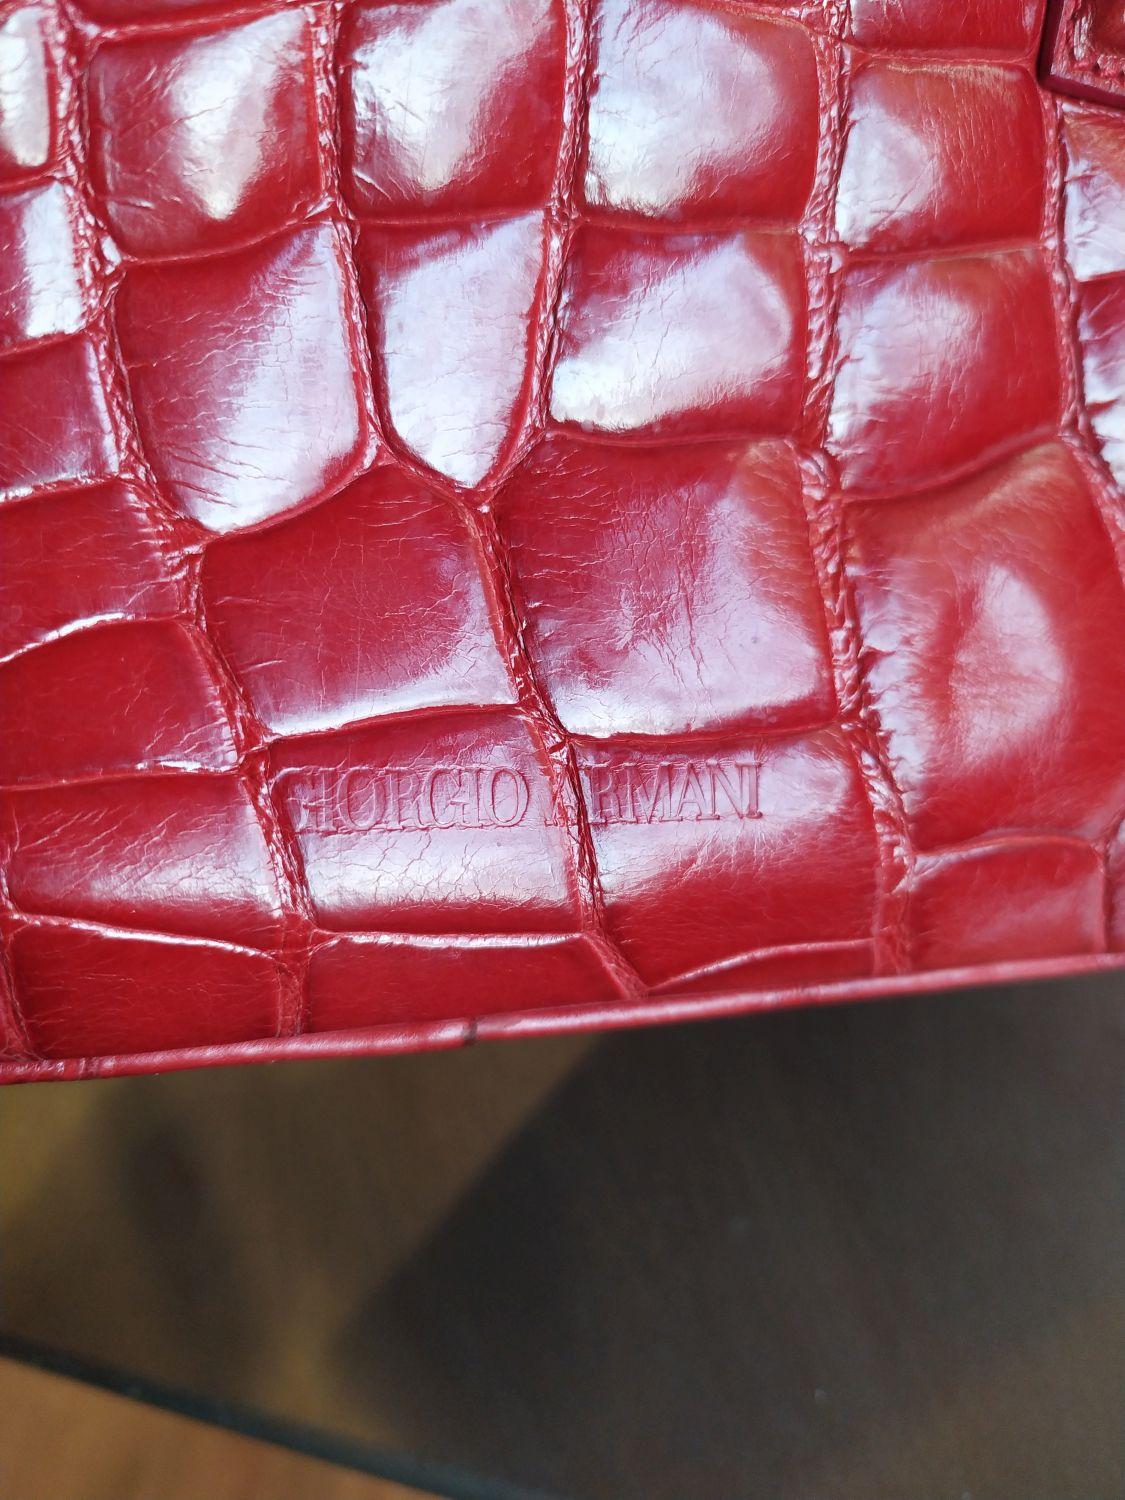 Giorgio Armani Red Crocodile small Handbag For Sale 2